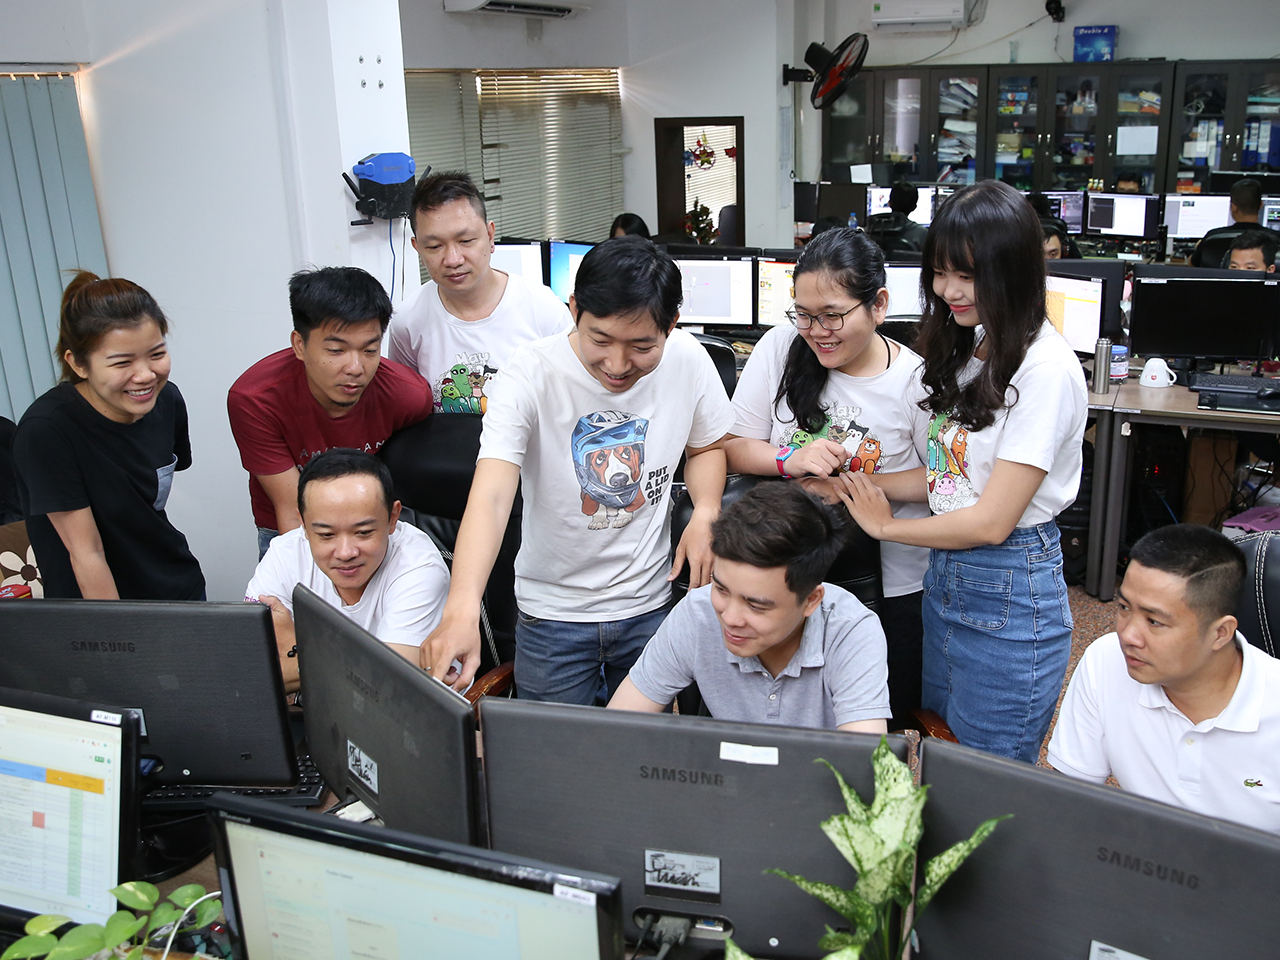 GAME開発の中心はベトナムの拠点で、ベトナム人やベトナムに滞在している日本人と、コミュニケーションを取りながら業務を進めている。国内では、社内ツールや障害支援ツールなどの開発が行われている。